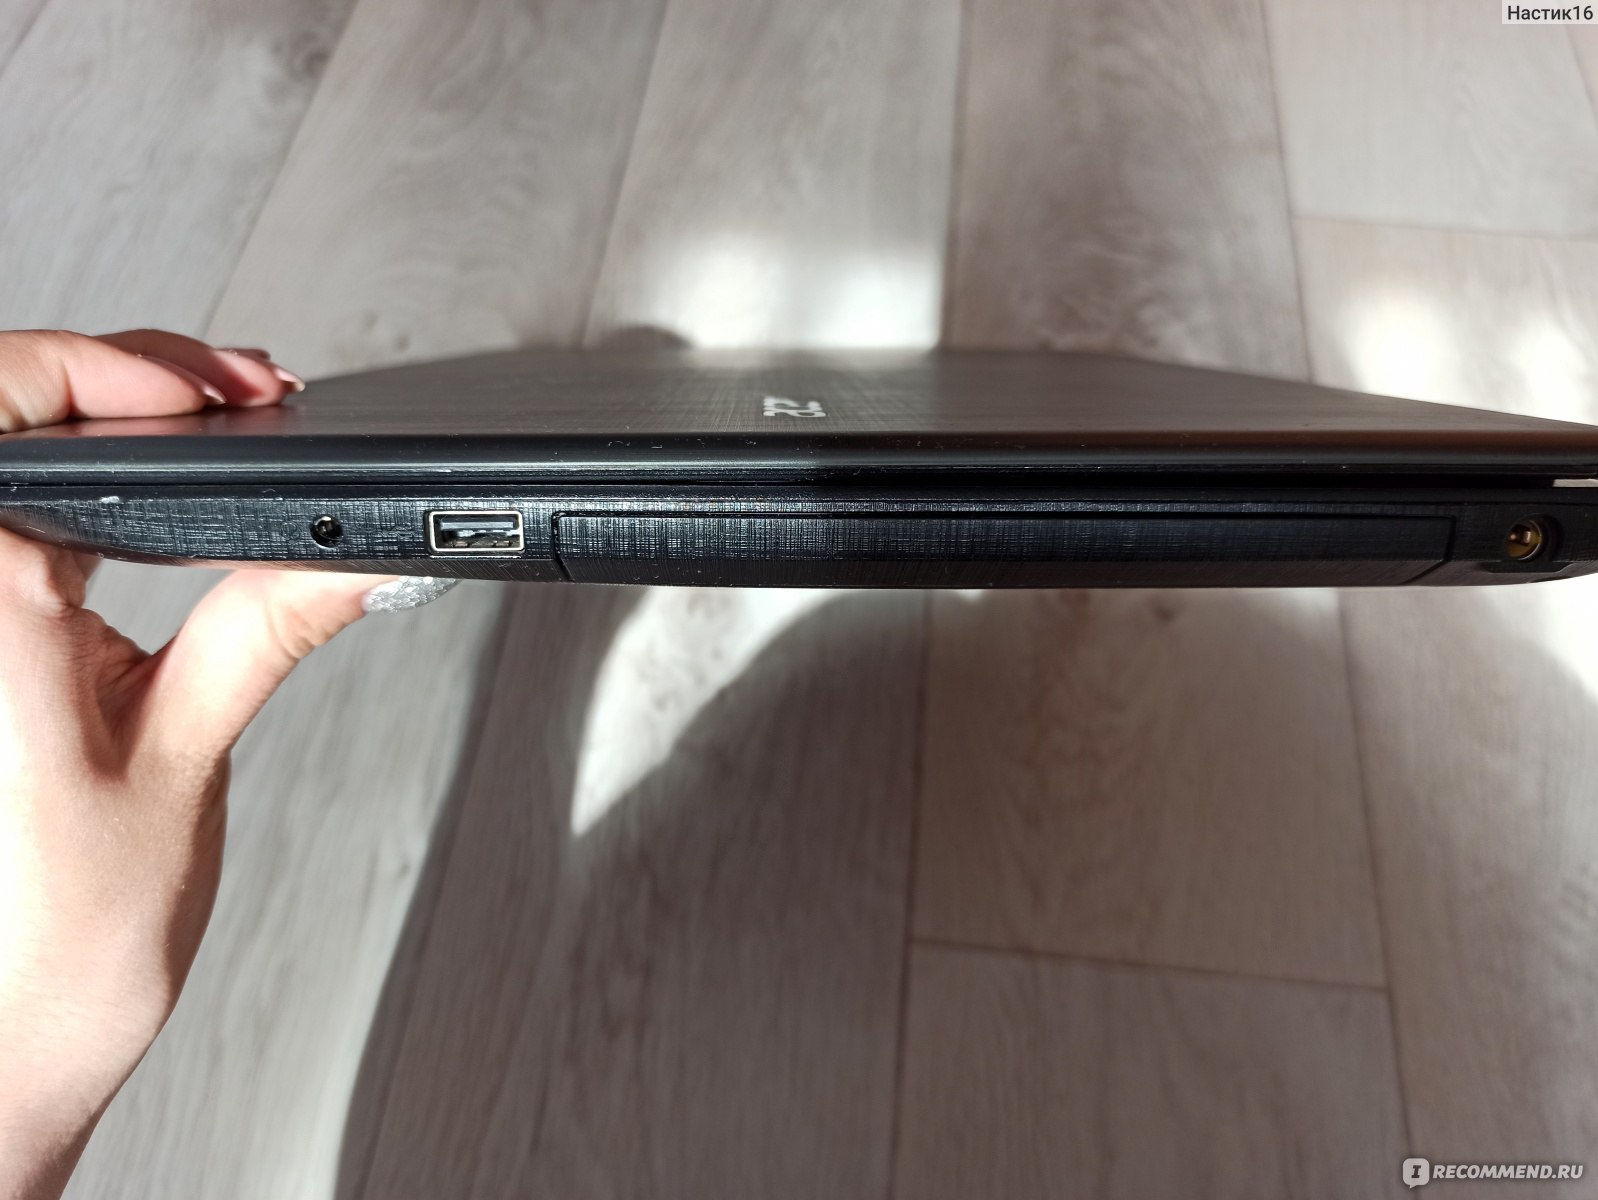 Ноутбук Acer Aspire E15 Характеристики Цена